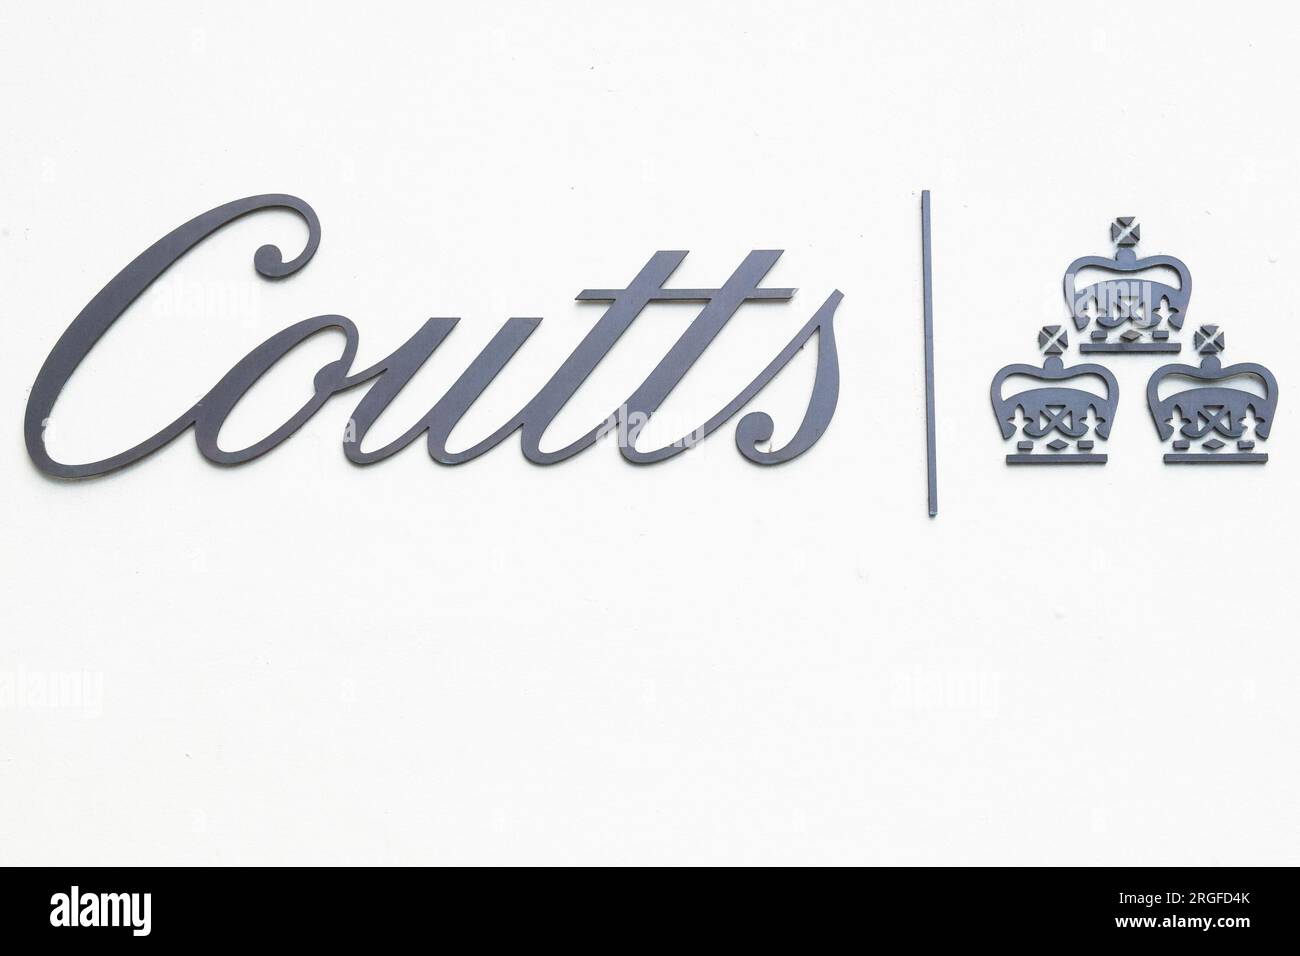 Una visione generale del segno di Coutts Bank presso la sua filiale di Londra presso lo Strand a Londra, Inghilterra, sabato 29 luglio 2023. La banca, che fa parte di Foto Stock